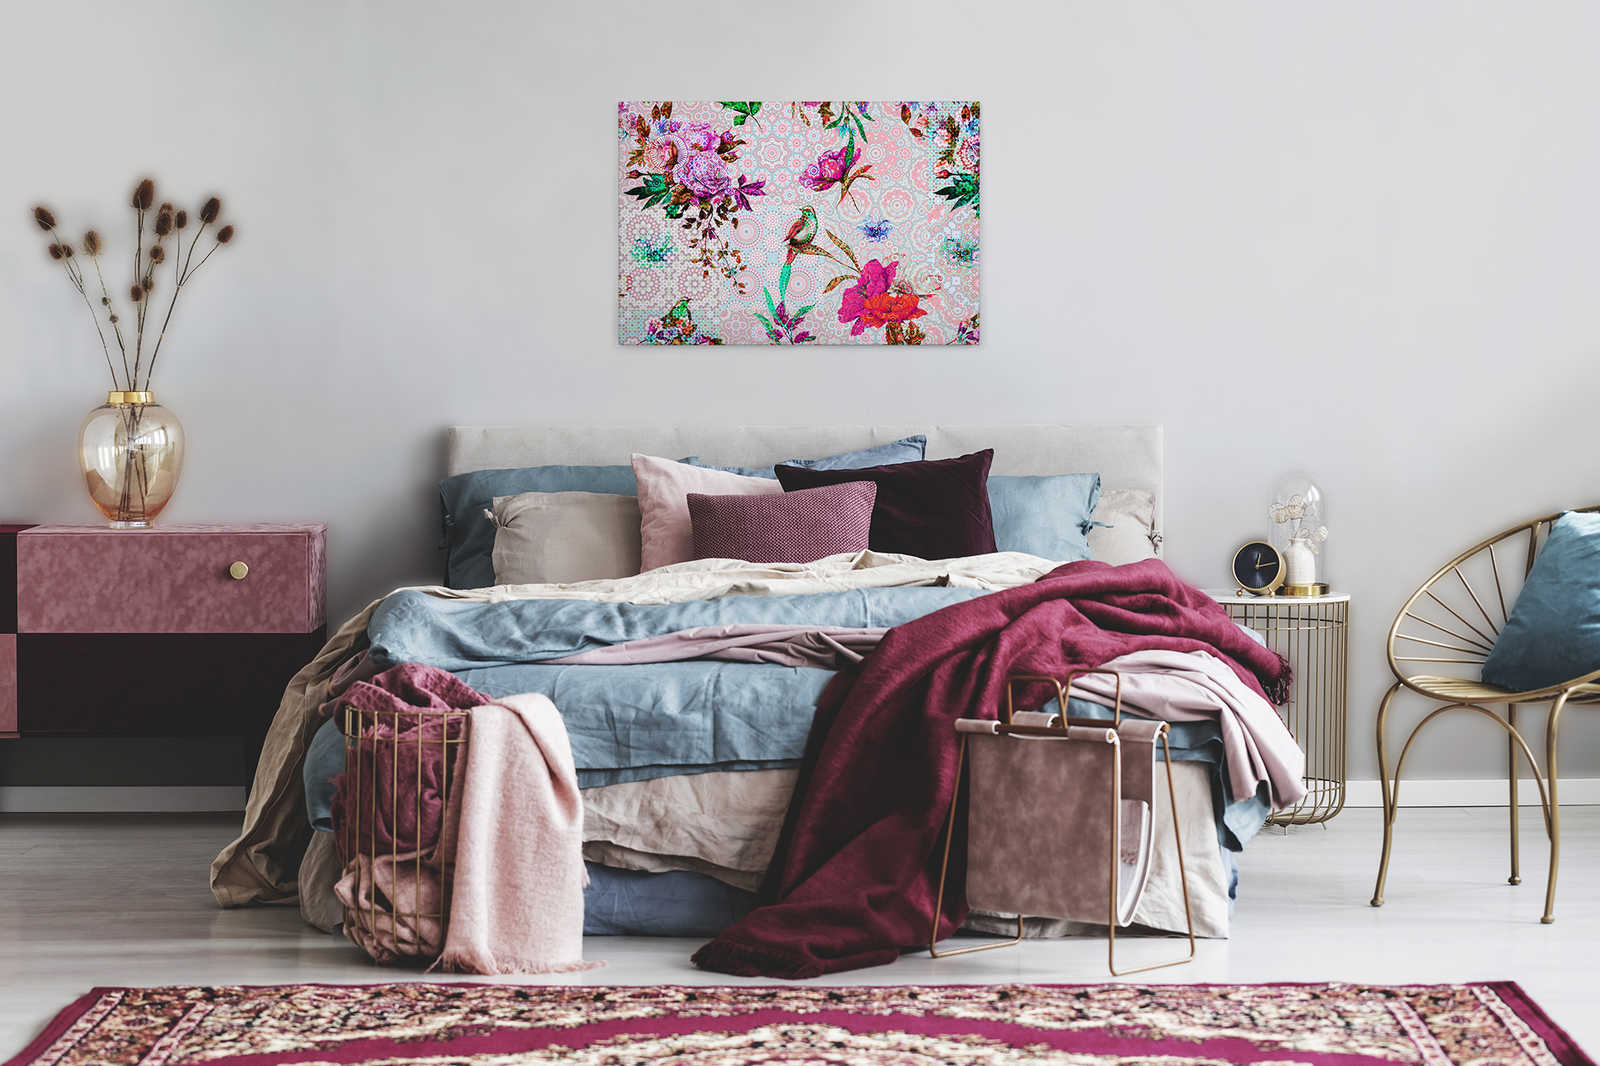             Lienzo de diseño Pintura Mosaico Floral - 0,90 m x 0,60 m
        